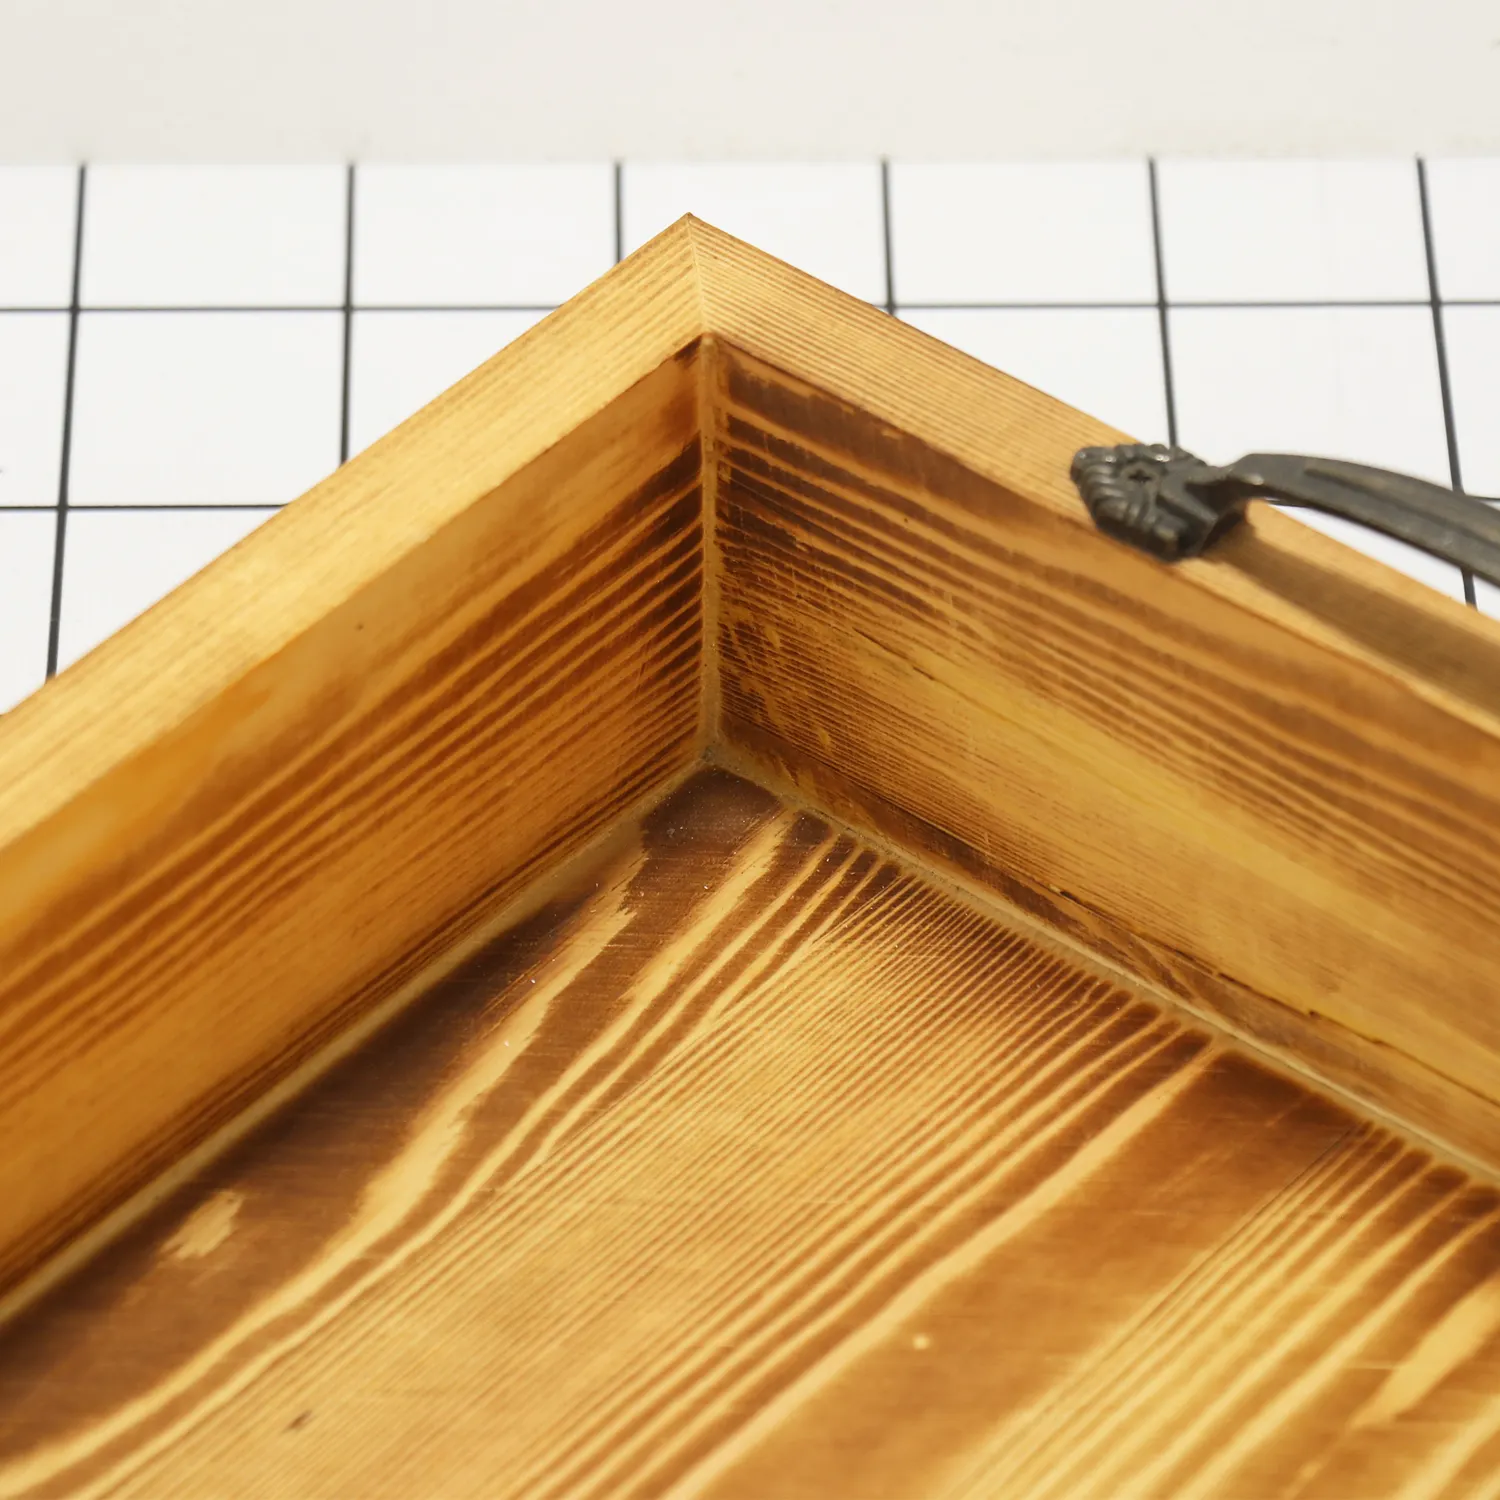 उच्च गुणवत्ता वाली थोक देहाती लकड़ी आयताकार ठोस लकड़ी धातु हैंडल के साथ धातु के हैंडल के साथ धातु के हैंडल